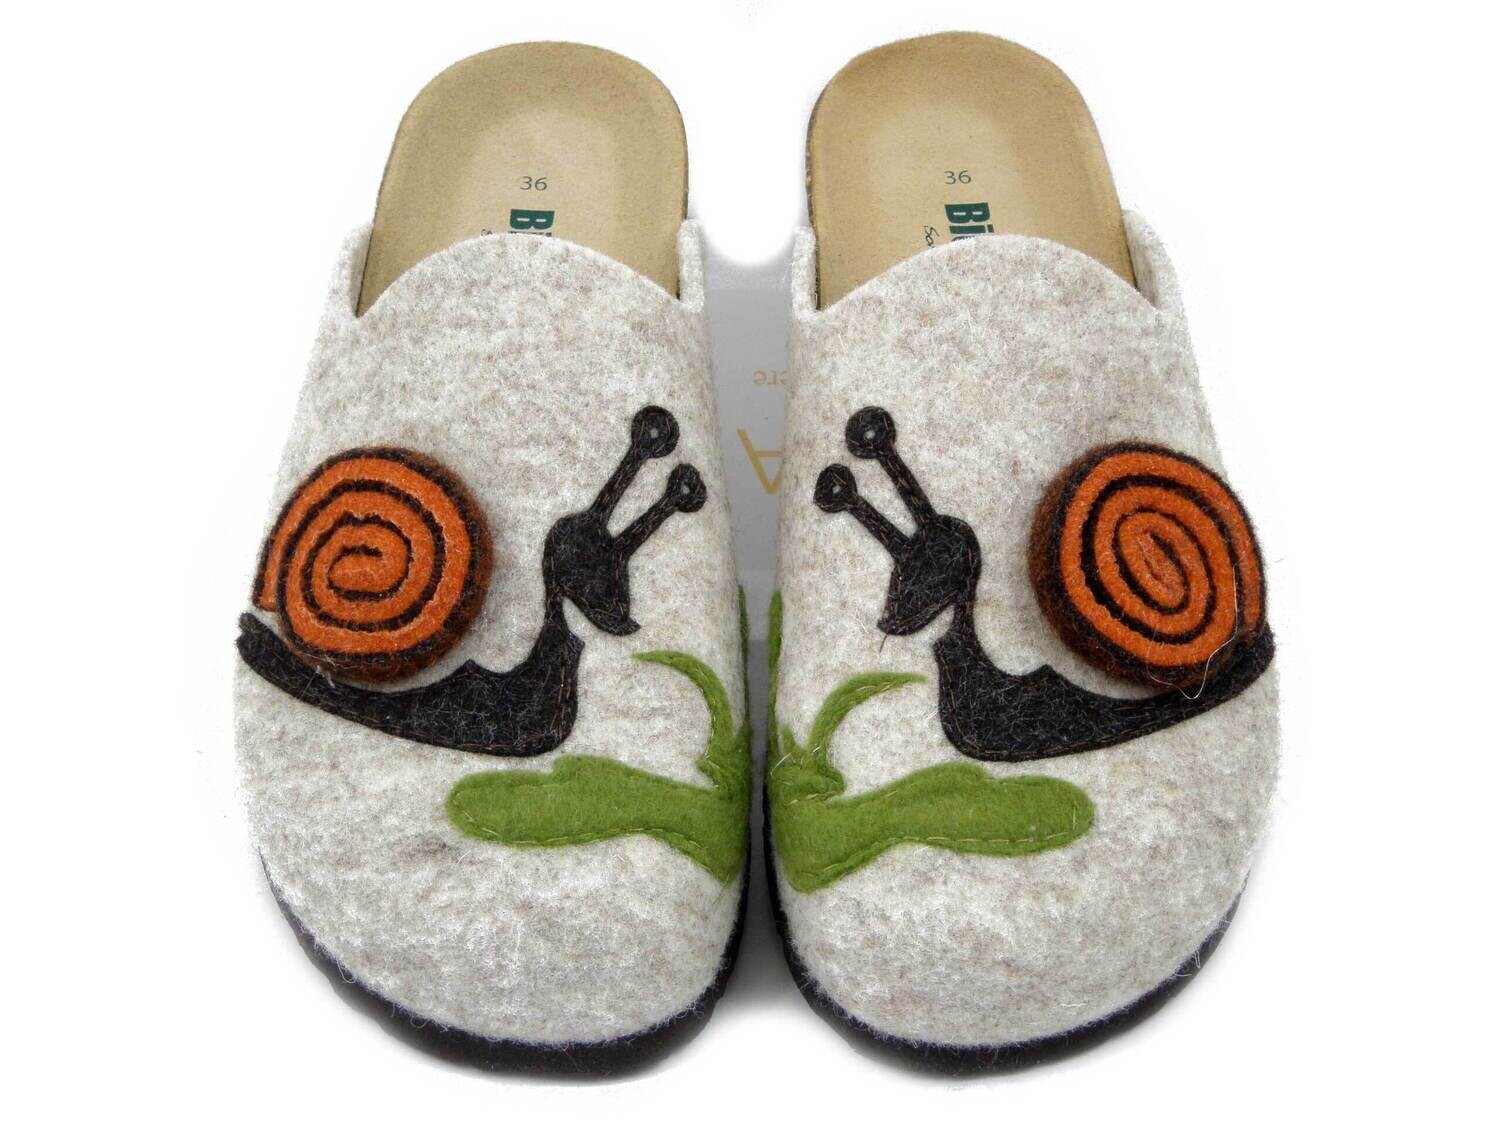 BIONATURA, Pantofole Donna invernale in Feltro Lana Beige e Multicolore con  Chiocciola, Made in Italy 12CHIOC